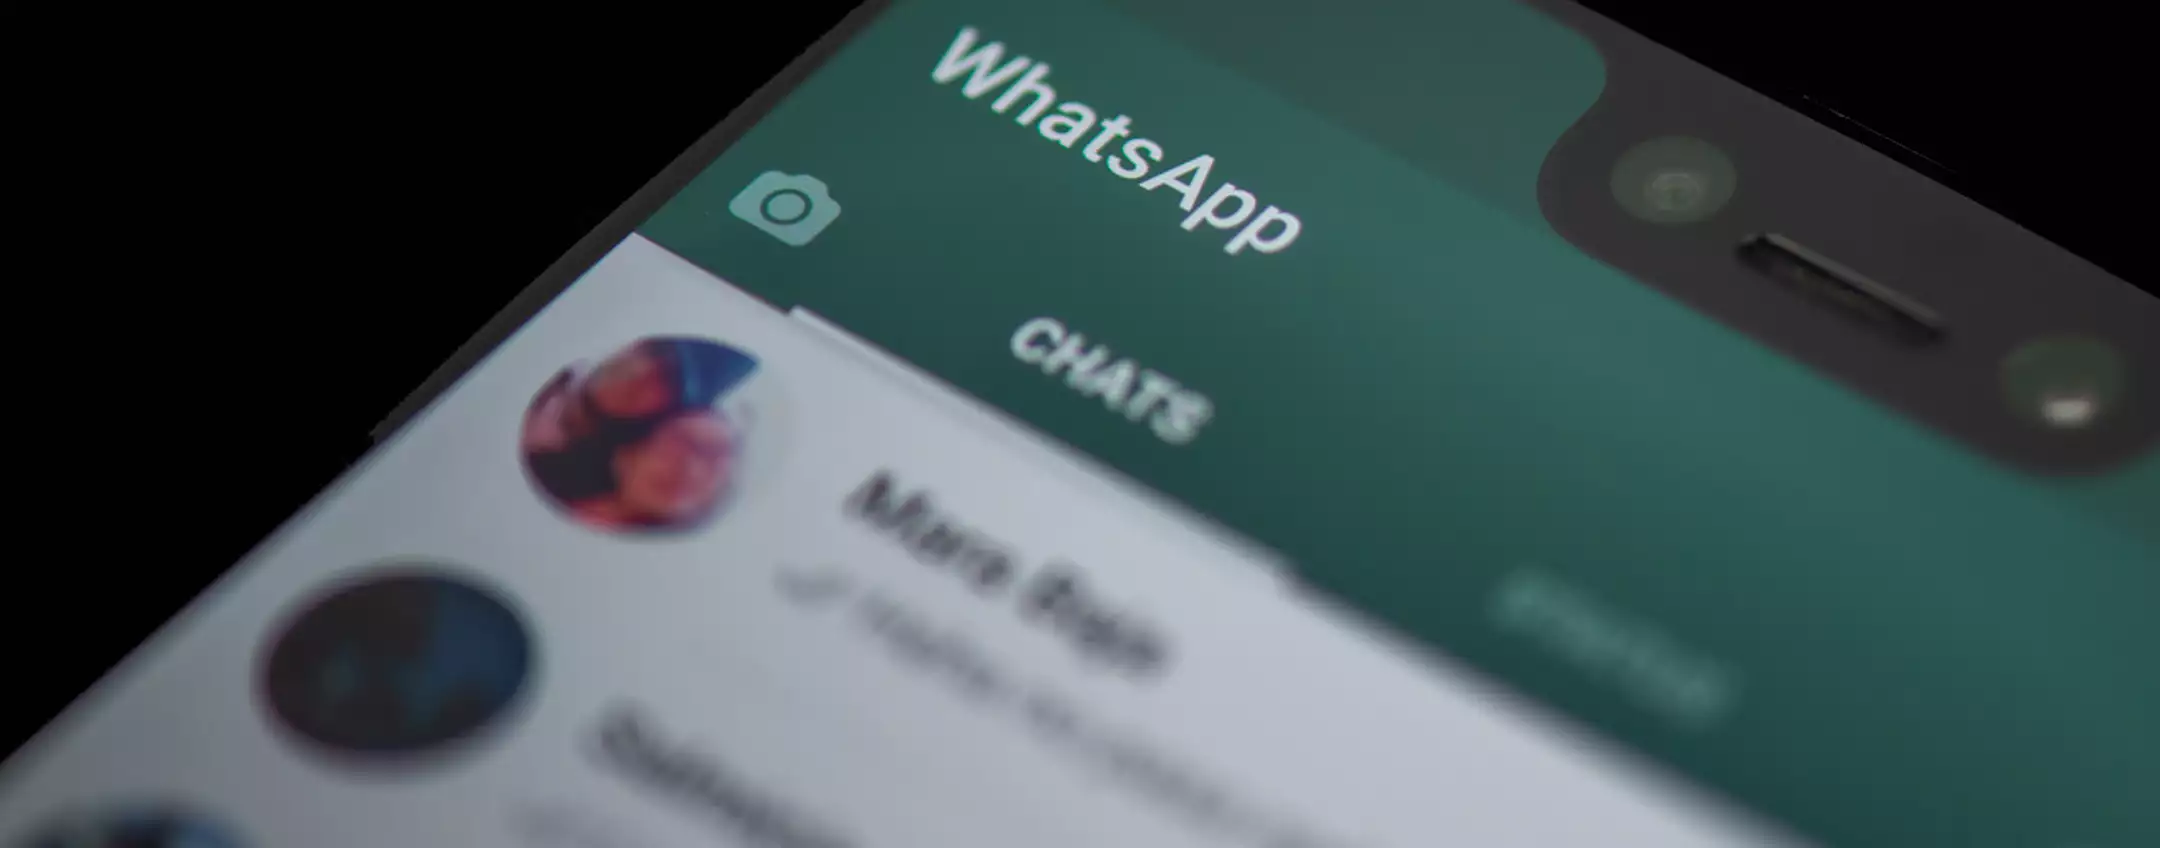 WhatsApp: modificare i messaggi inviati sarà un gioco da ragazzi